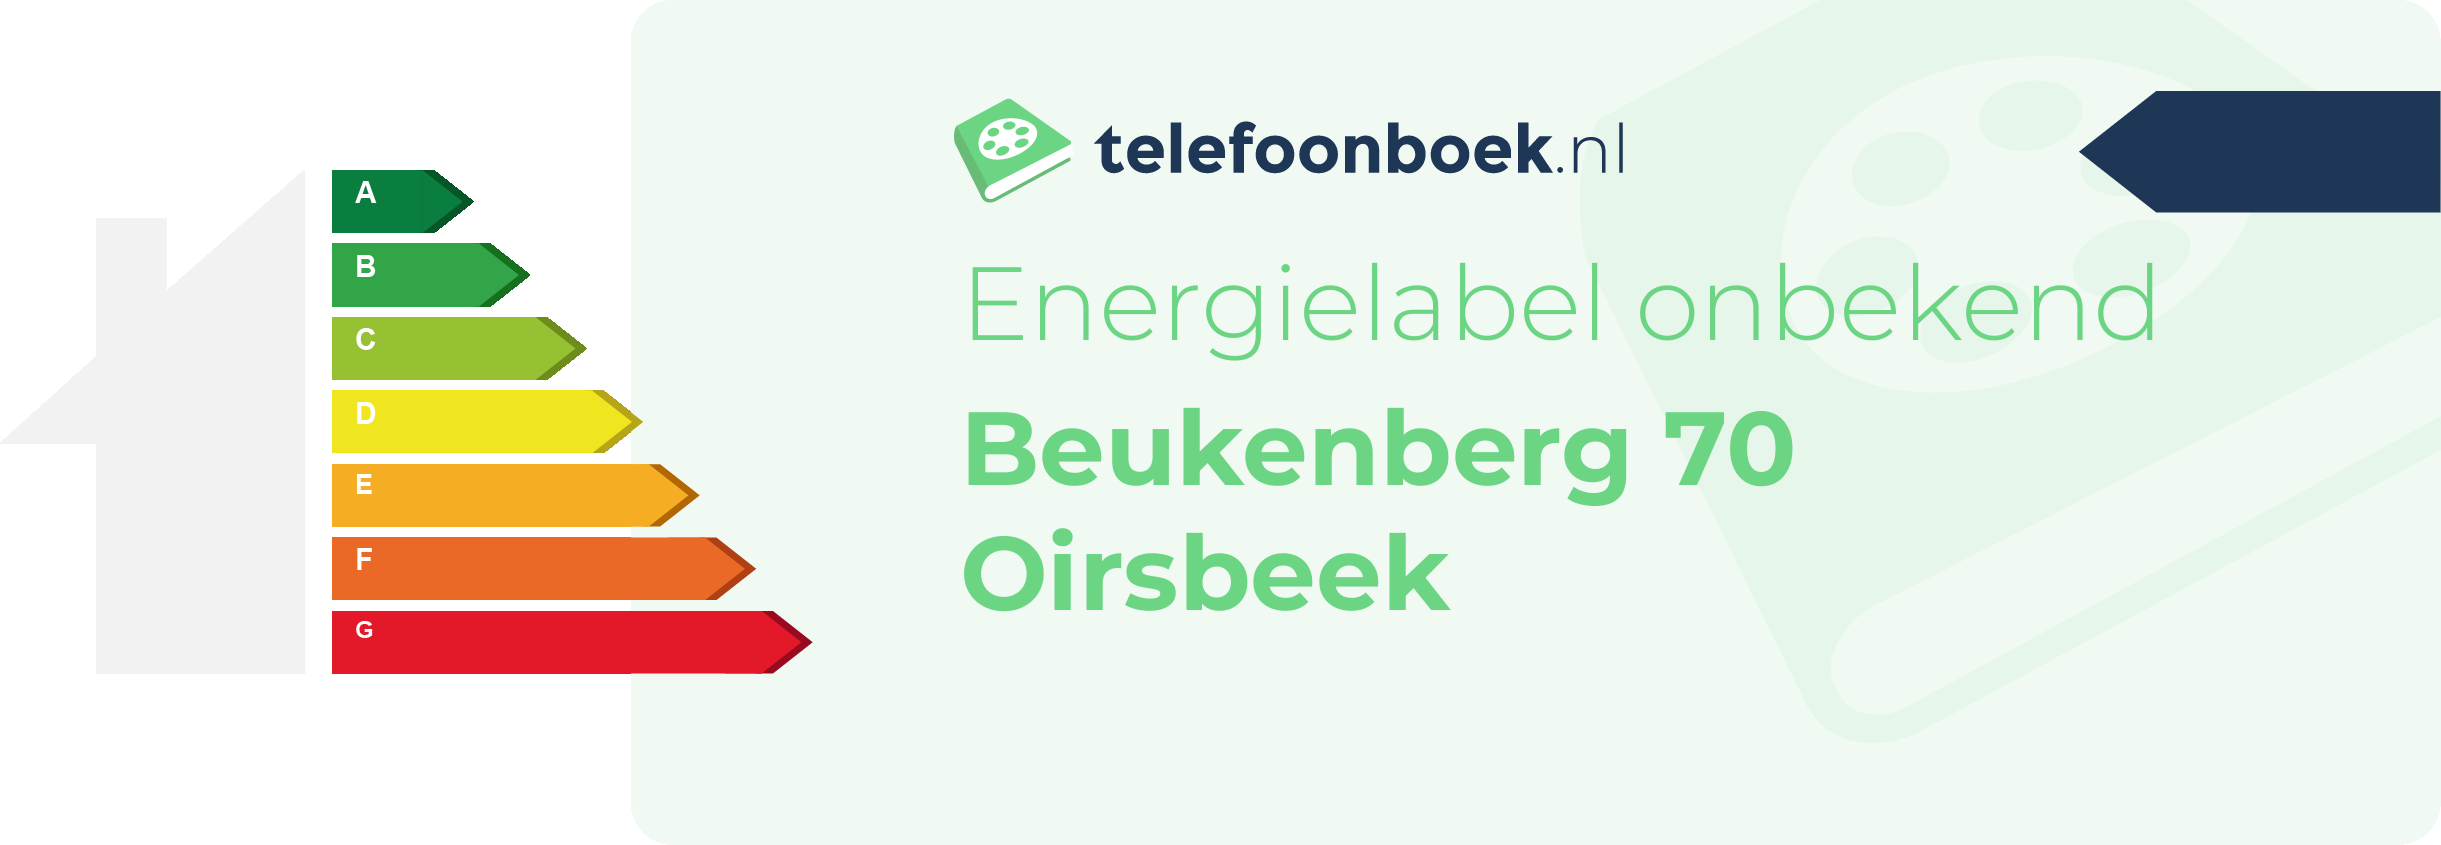 Energielabel Beukenberg 70 Oirsbeek